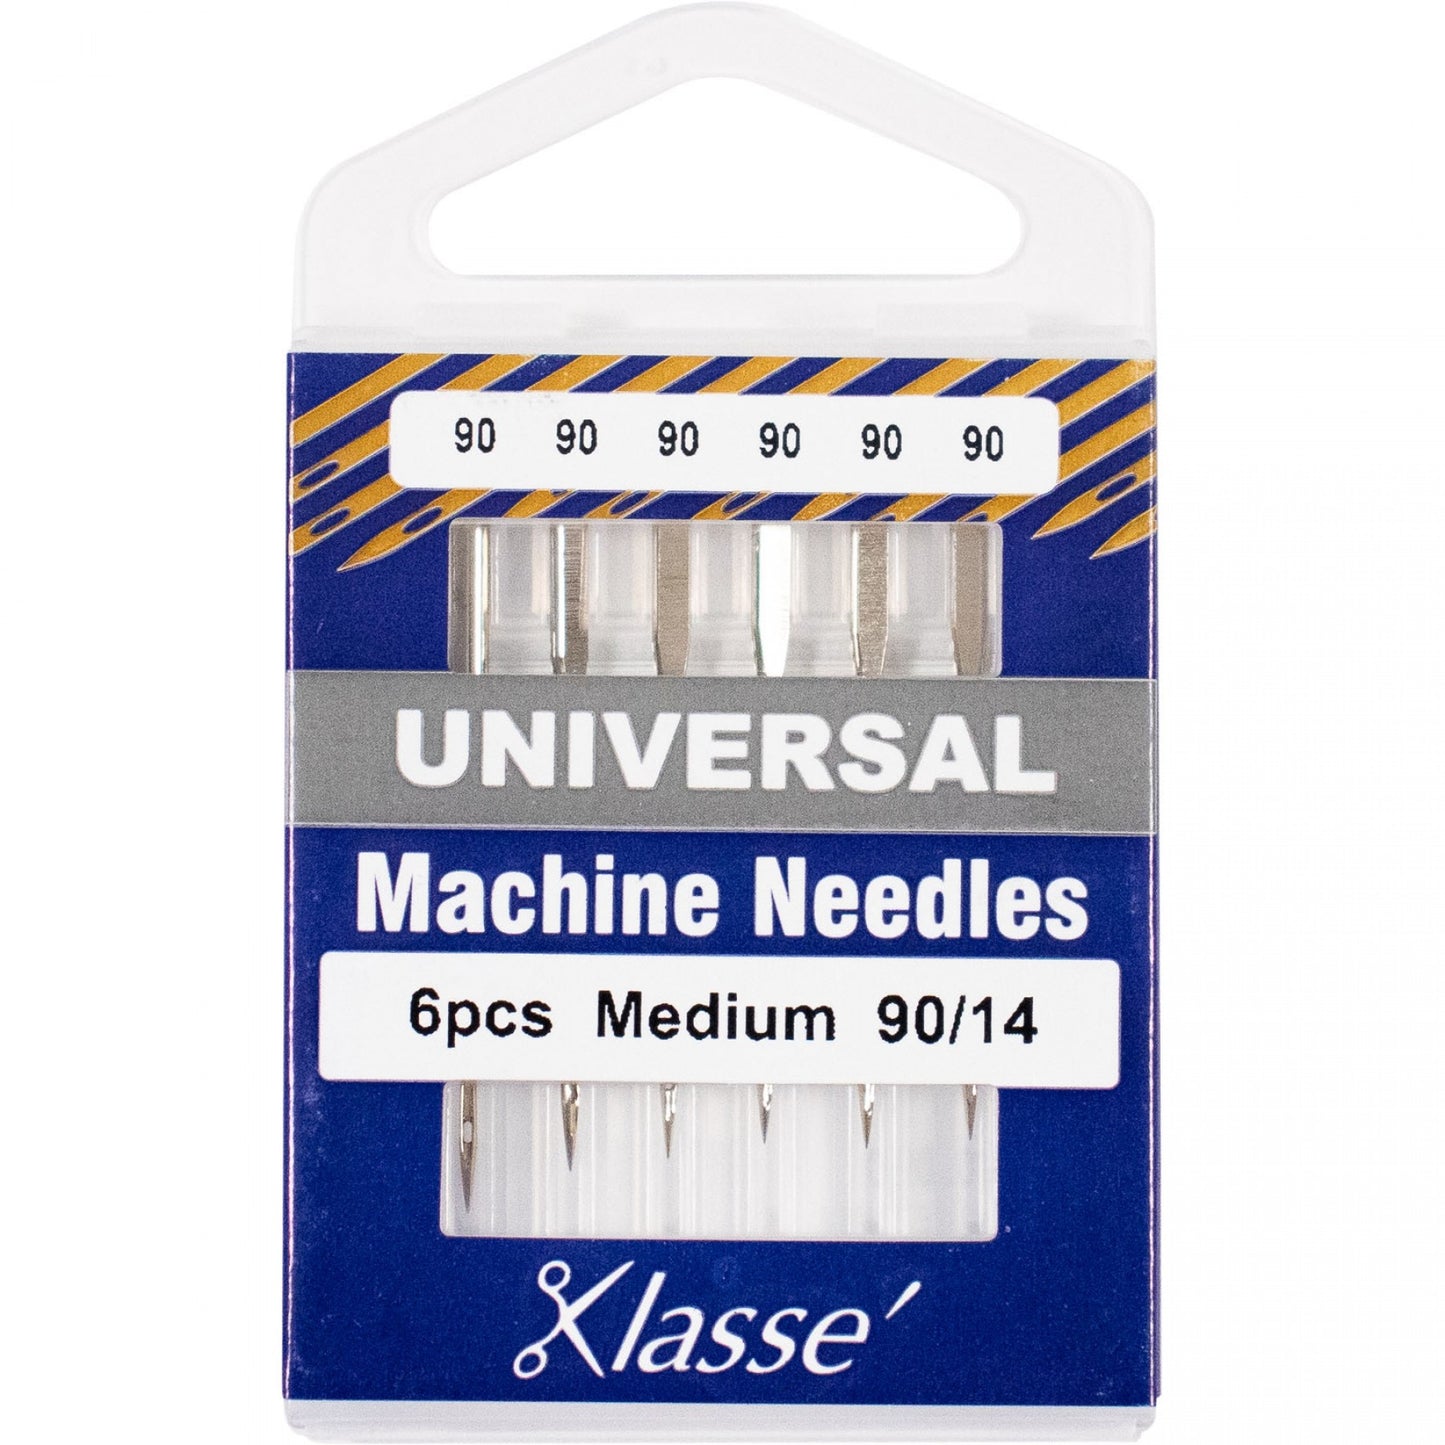 KLASSE´ Universal Needles Cassette - Size 90/14 - 6 count